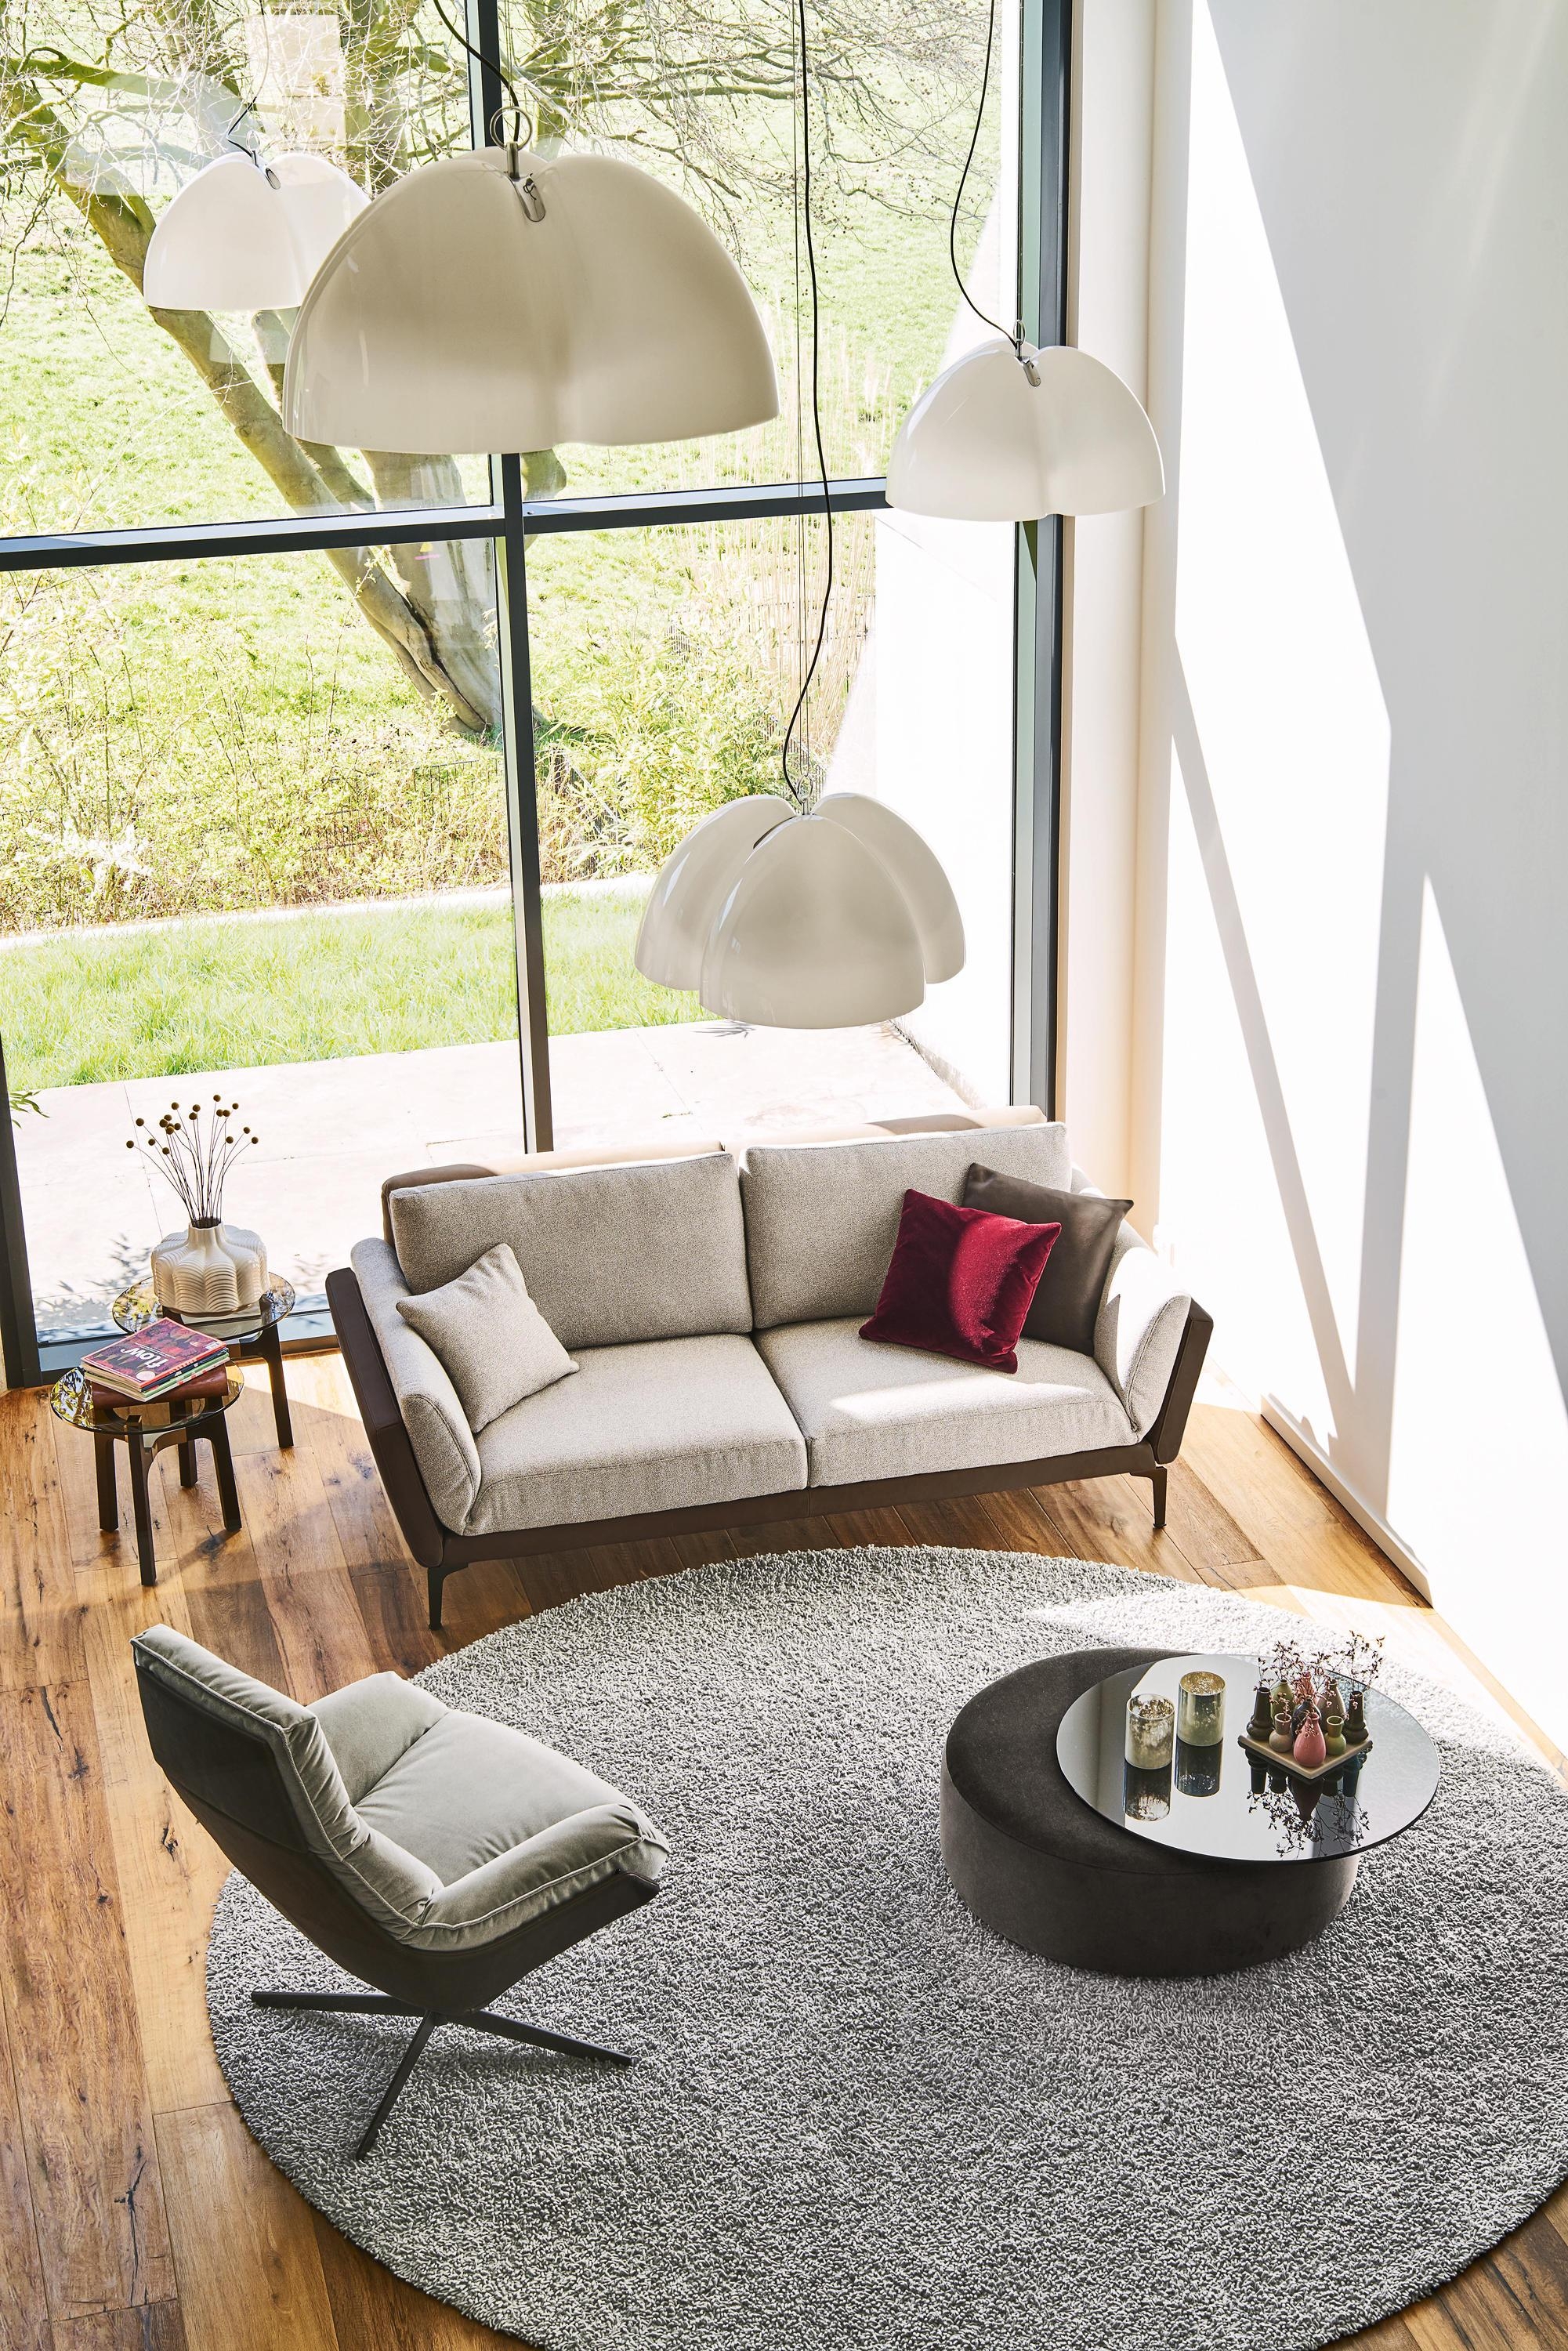 Mit wenigen Handgriffen verwandelt sich das elegante Sofa der @bielefelderwerkstaetten in einen vollwertigen Longchair.